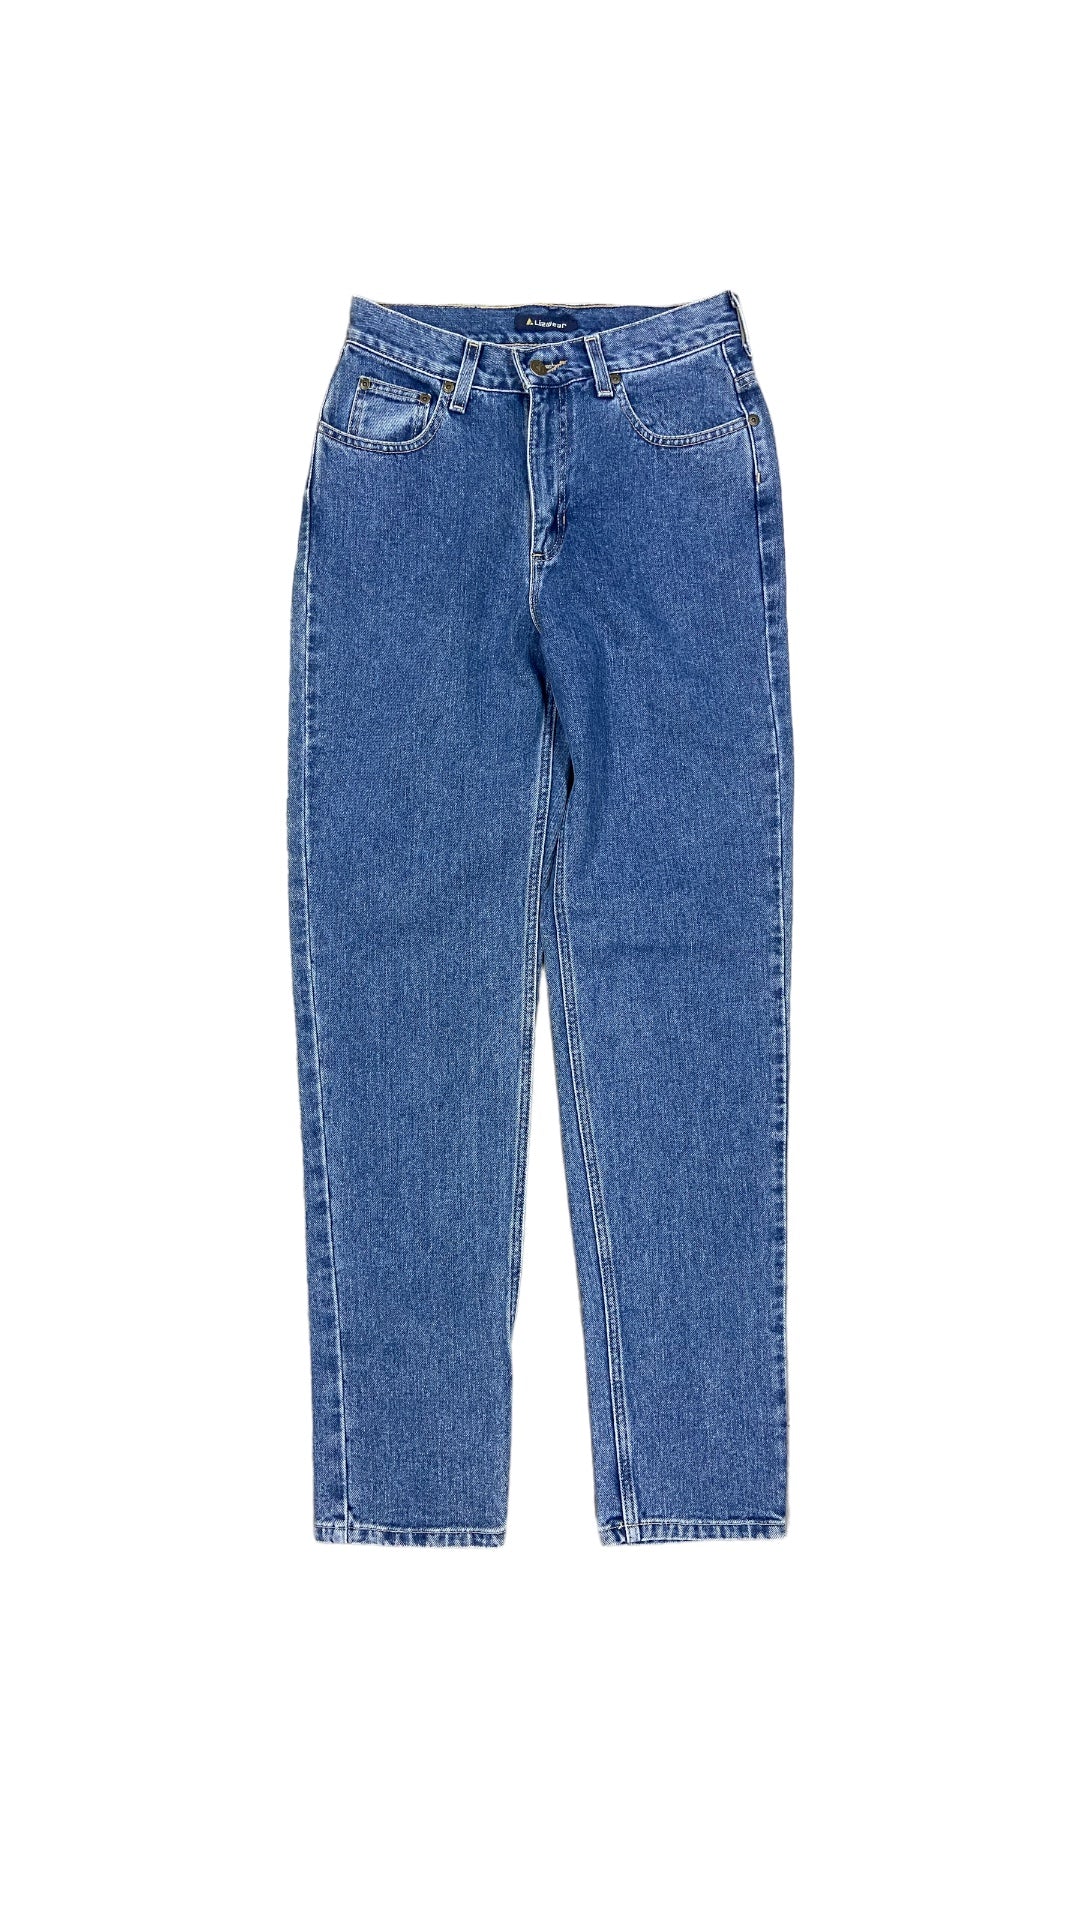 VTG Liz Claiborne Casual Comfort Jeans Sz 28x32